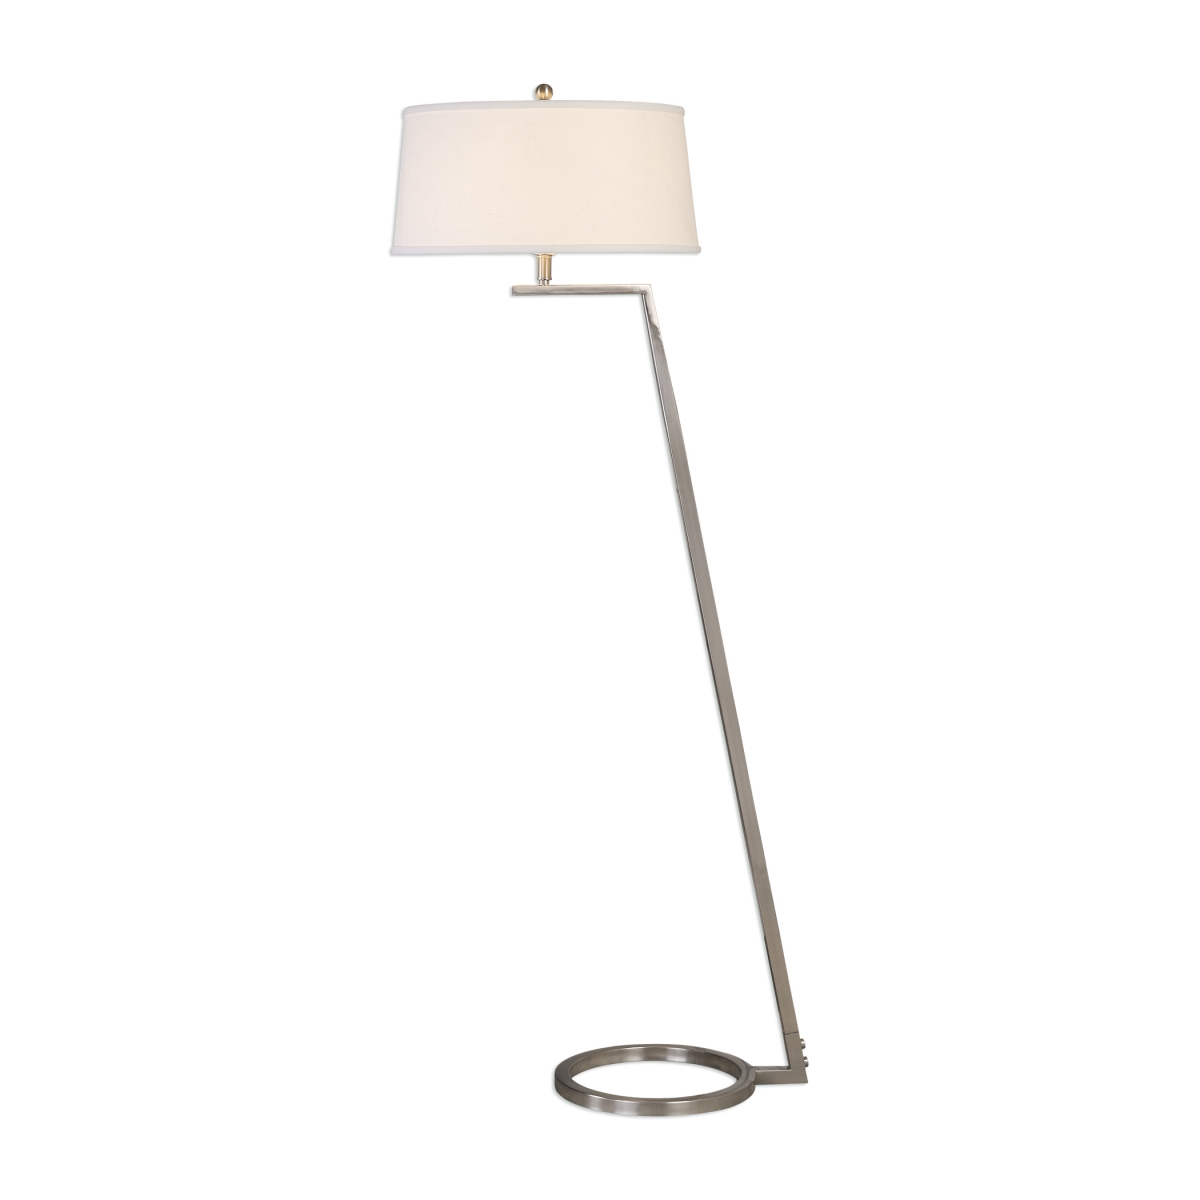 28108 Ordino Modern Nickel Floor Lamp